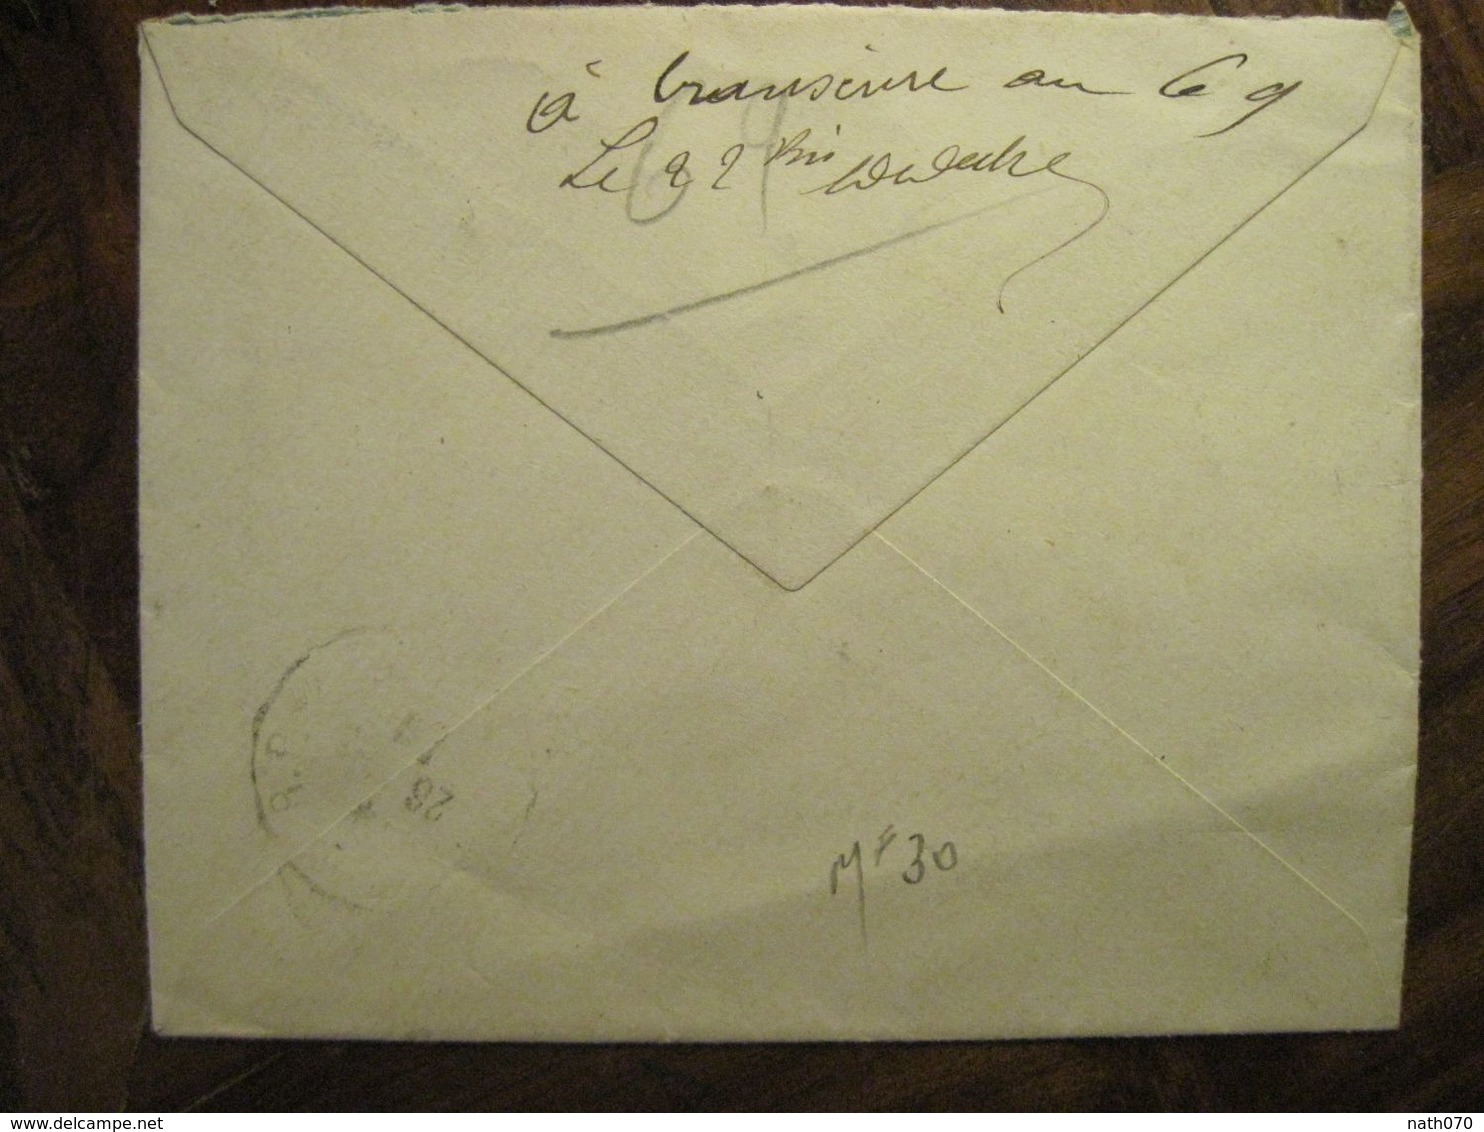 Cote D'Ivoire 1920 France Grand Bassam Lettre Enveloppe Cover Colonie Recommandé Reco AOF Taffin Lefort - Covers & Documents